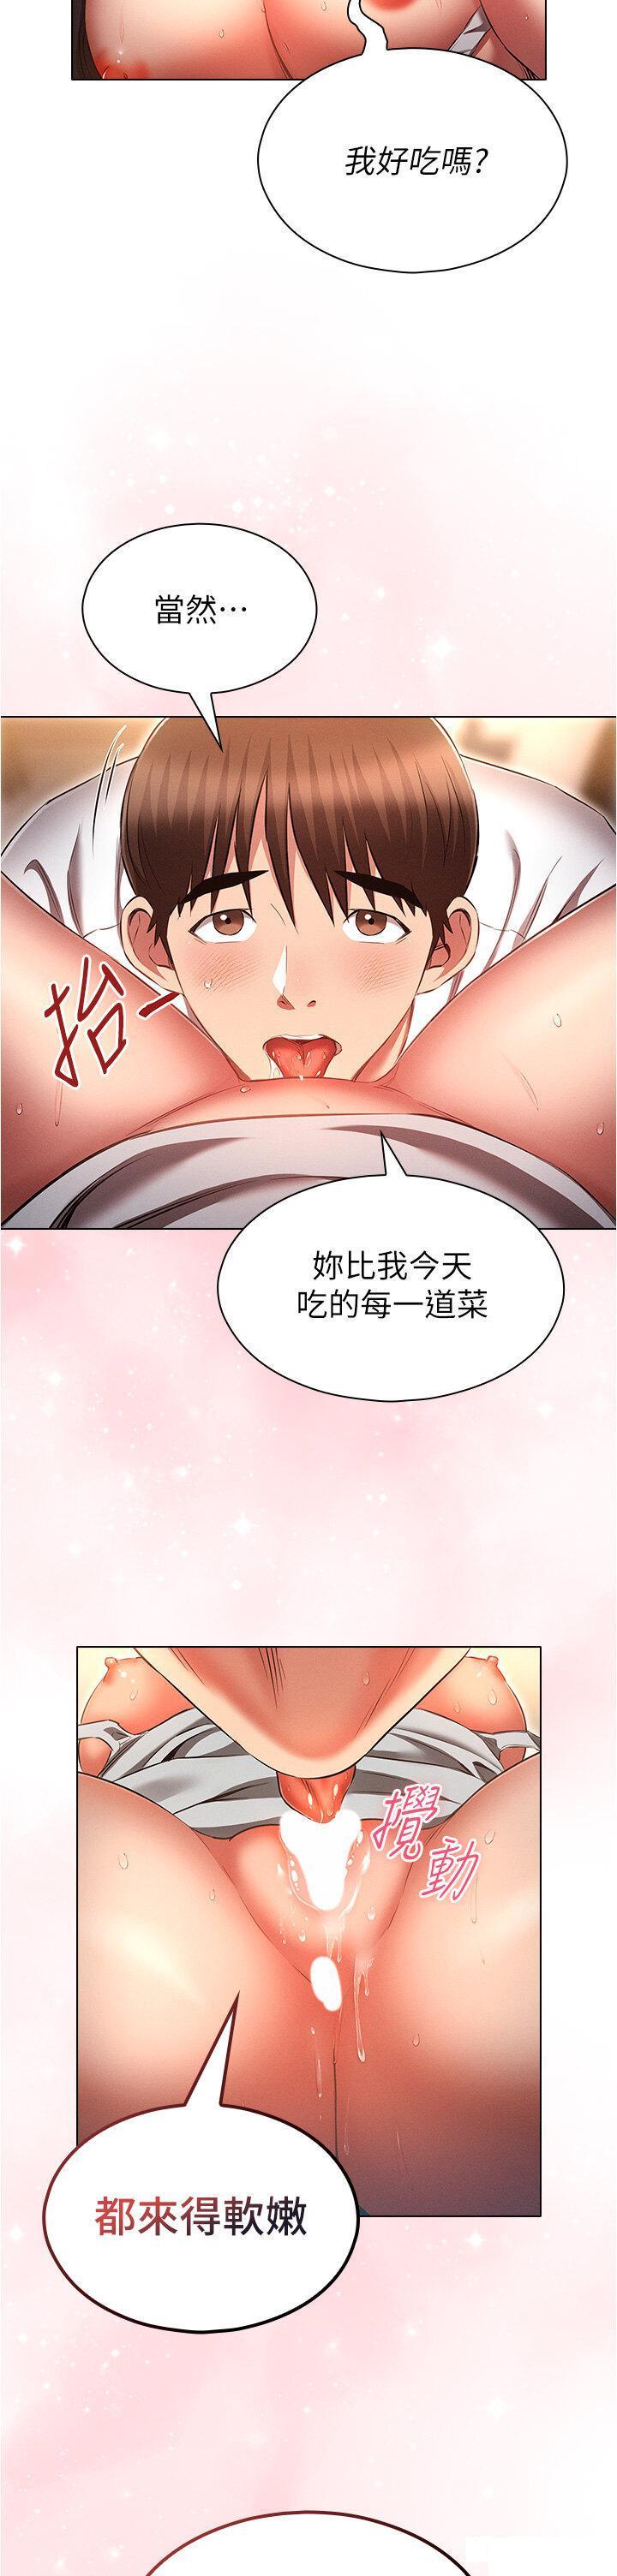 韩国污漫画 魯蛇的多重宇宙 第59话_鲜嫩可口的蜜汁鲍鱼 22